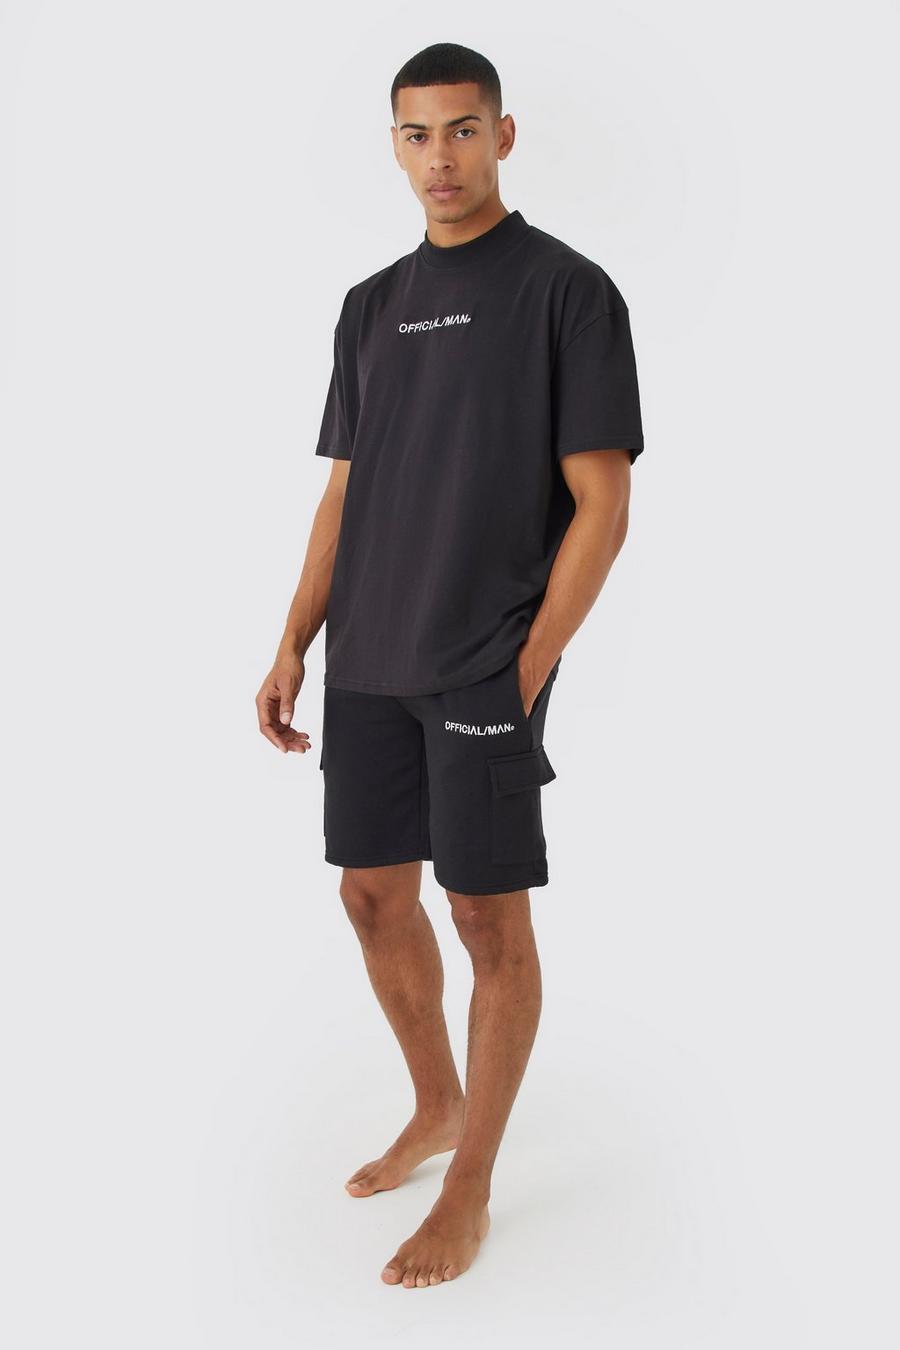 Black Oversized Man T-shirt And Cargo Short Set